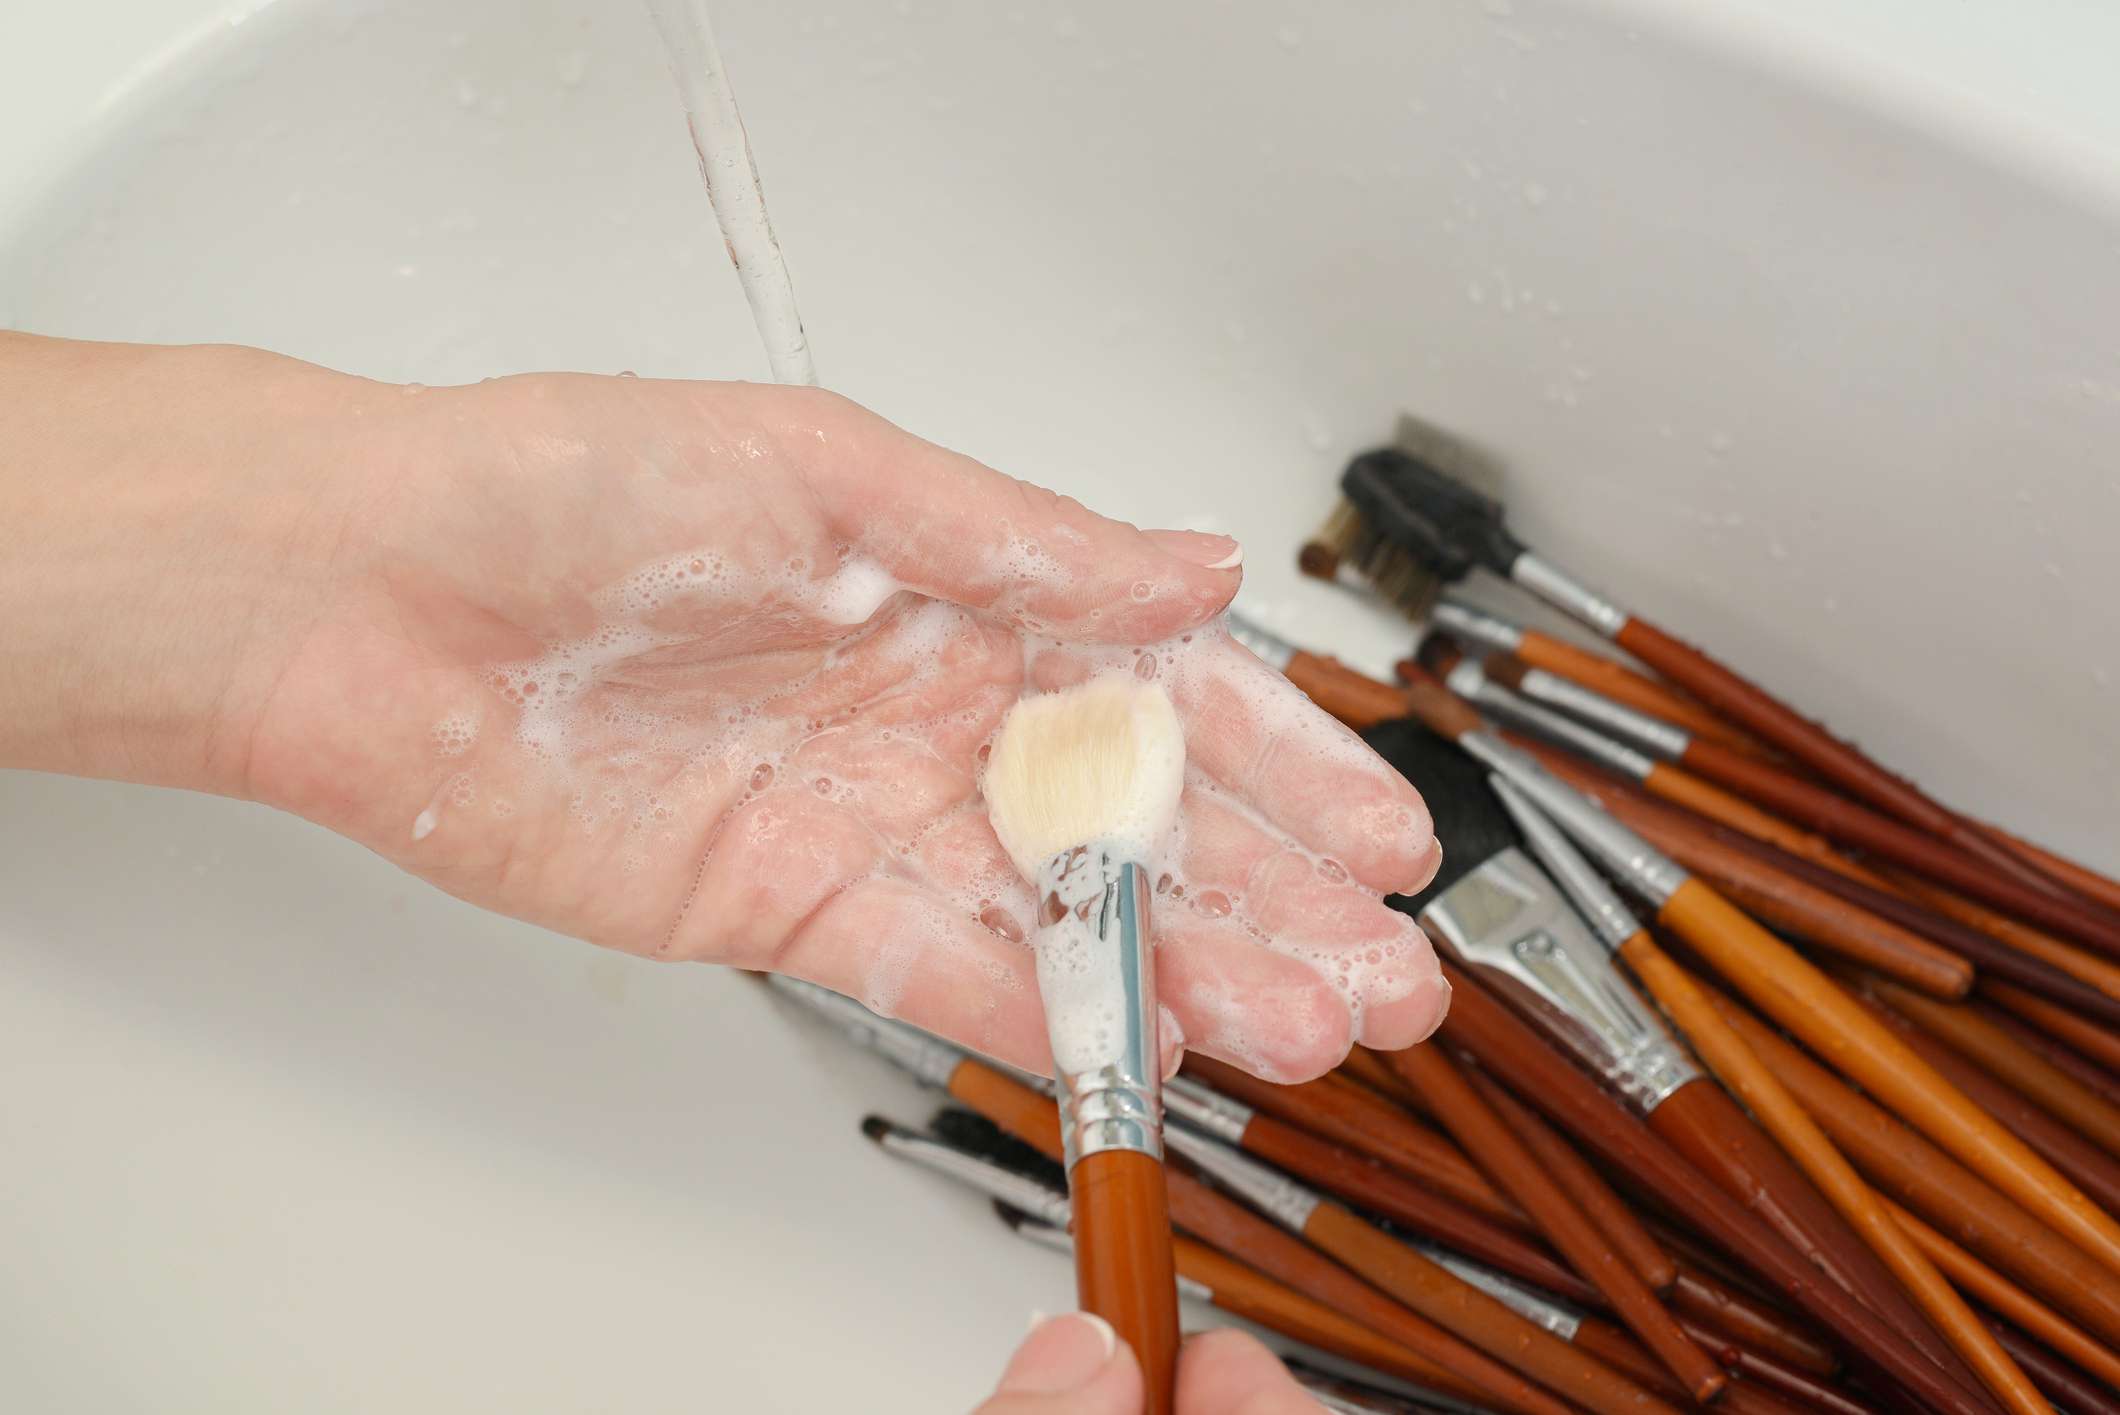 Persona lavando la brocha de maquillaje con jabón en la mano sobre el fregadero